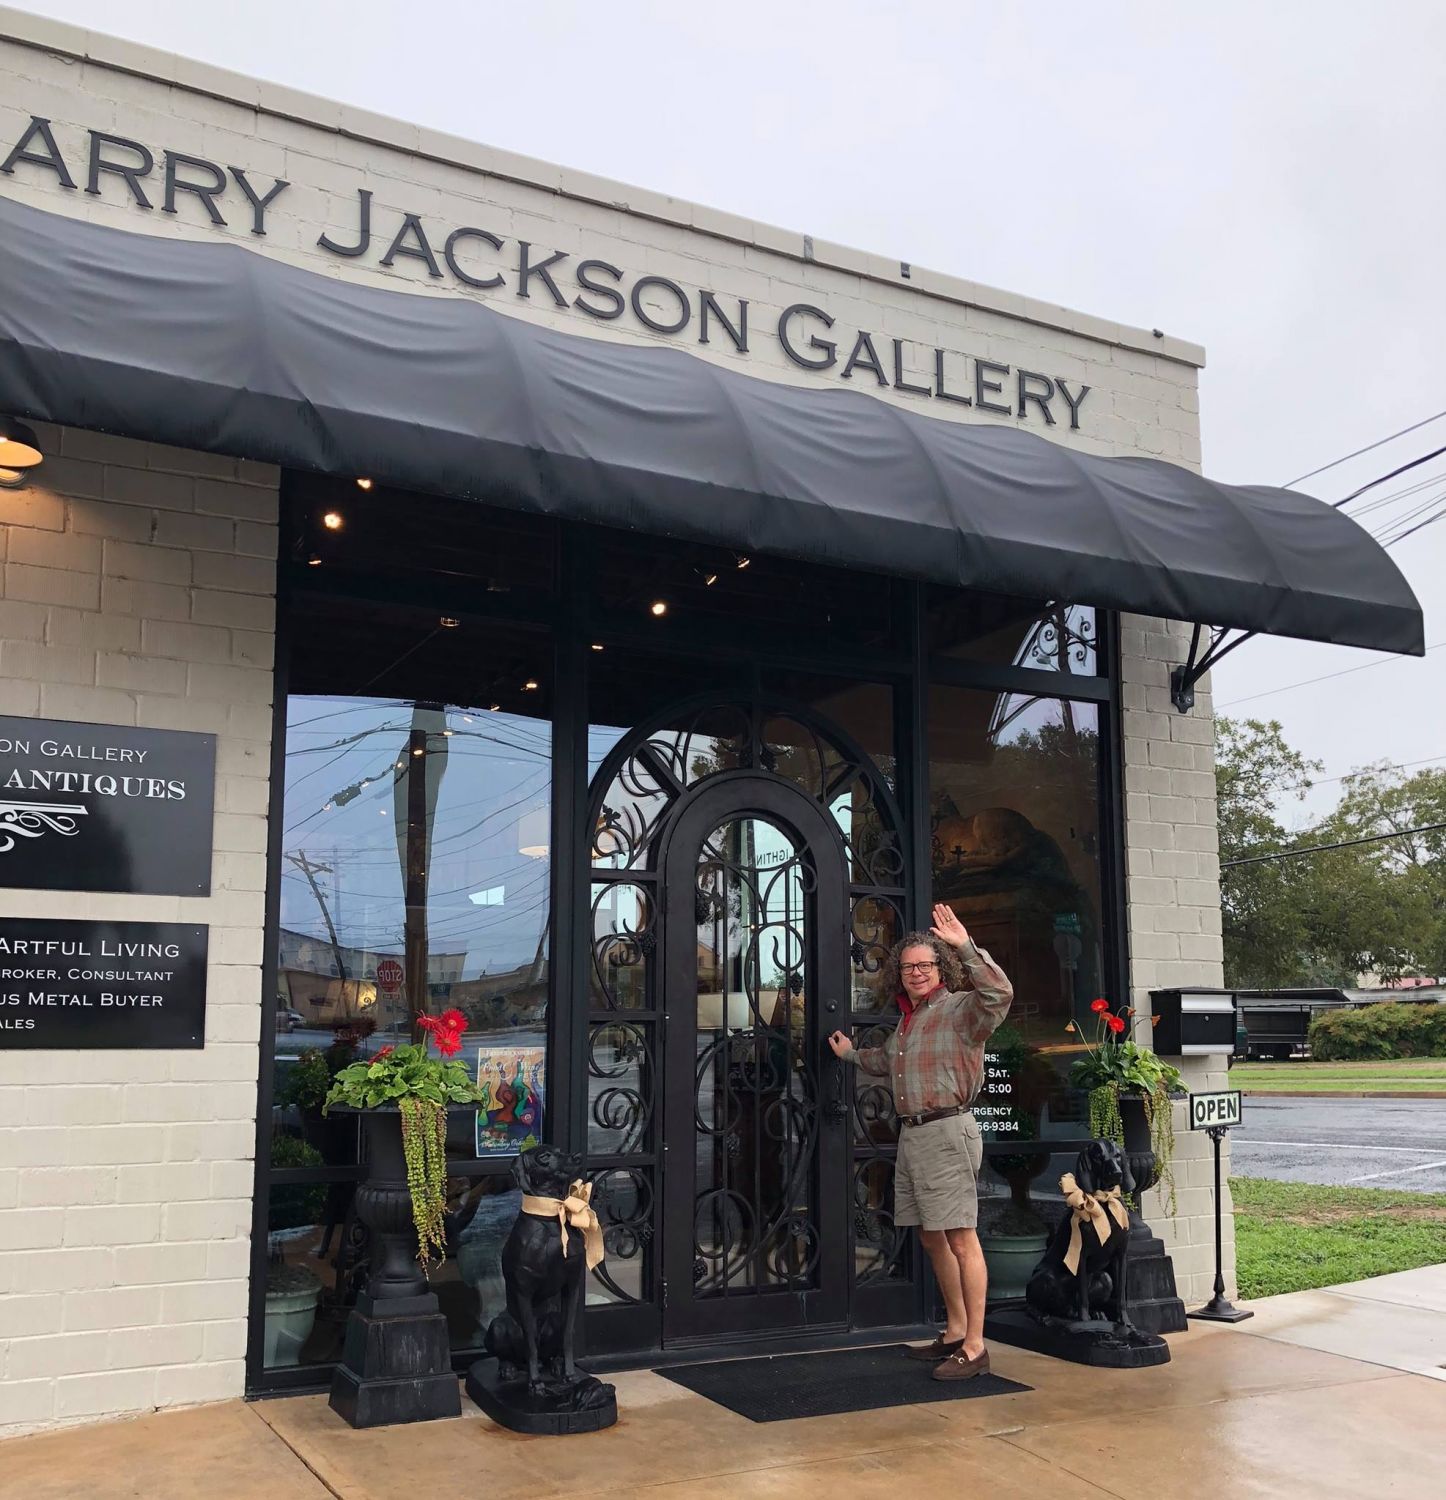 Larry Jackson Fine Art & Antiques